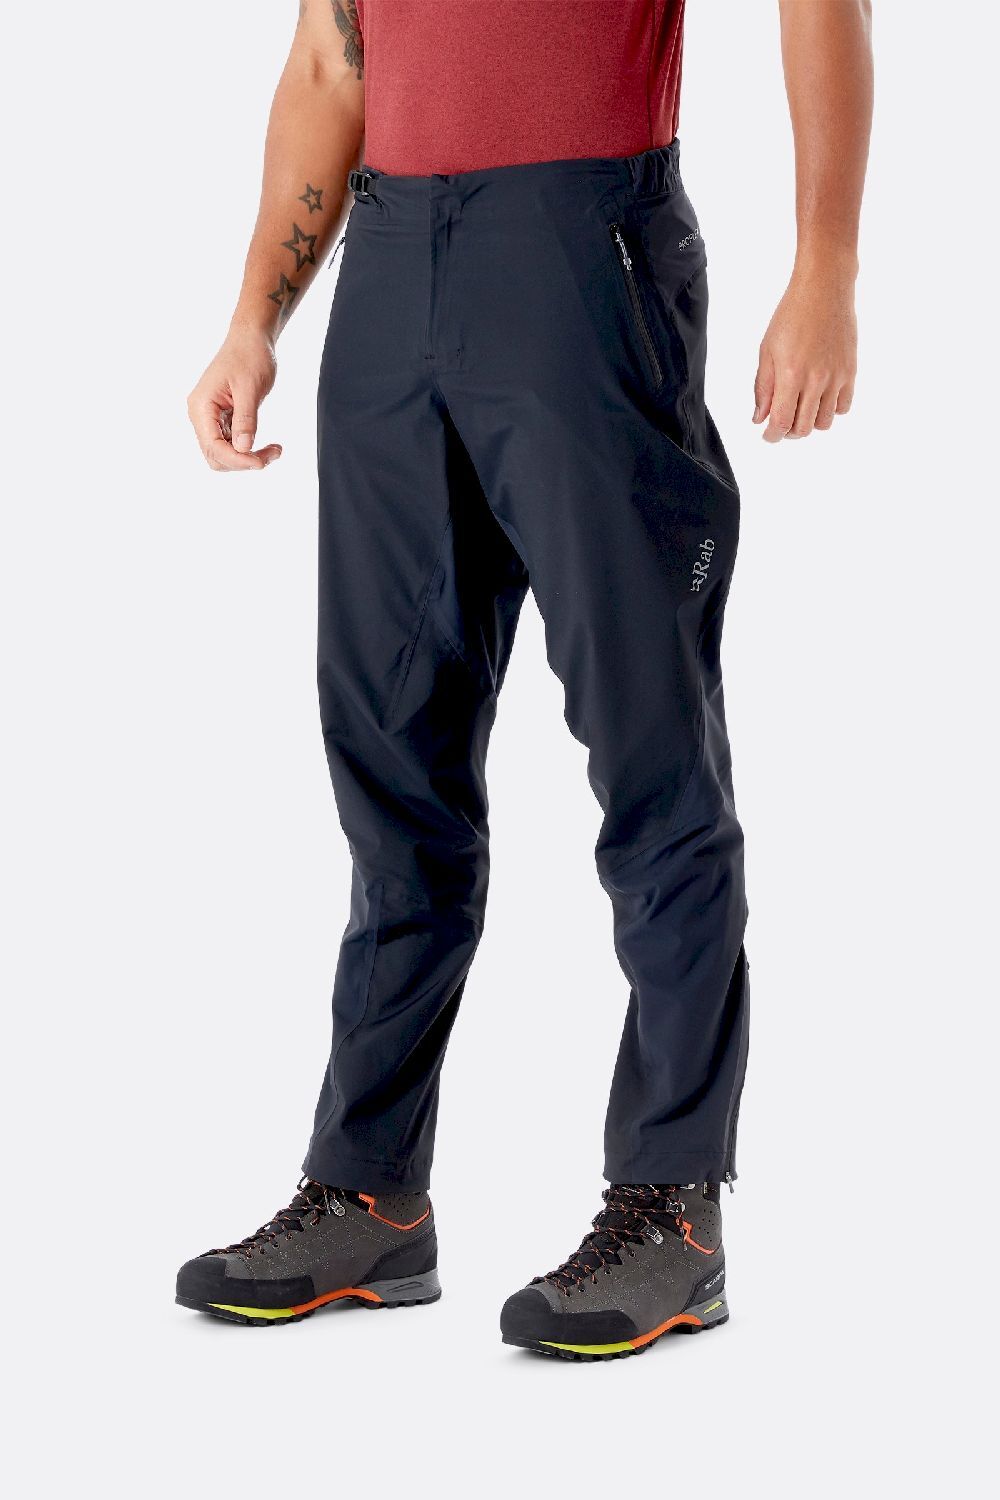 Rab Kinetic Alpine 2.0 Pants - Waterproof trousers - Men's | Hardloop